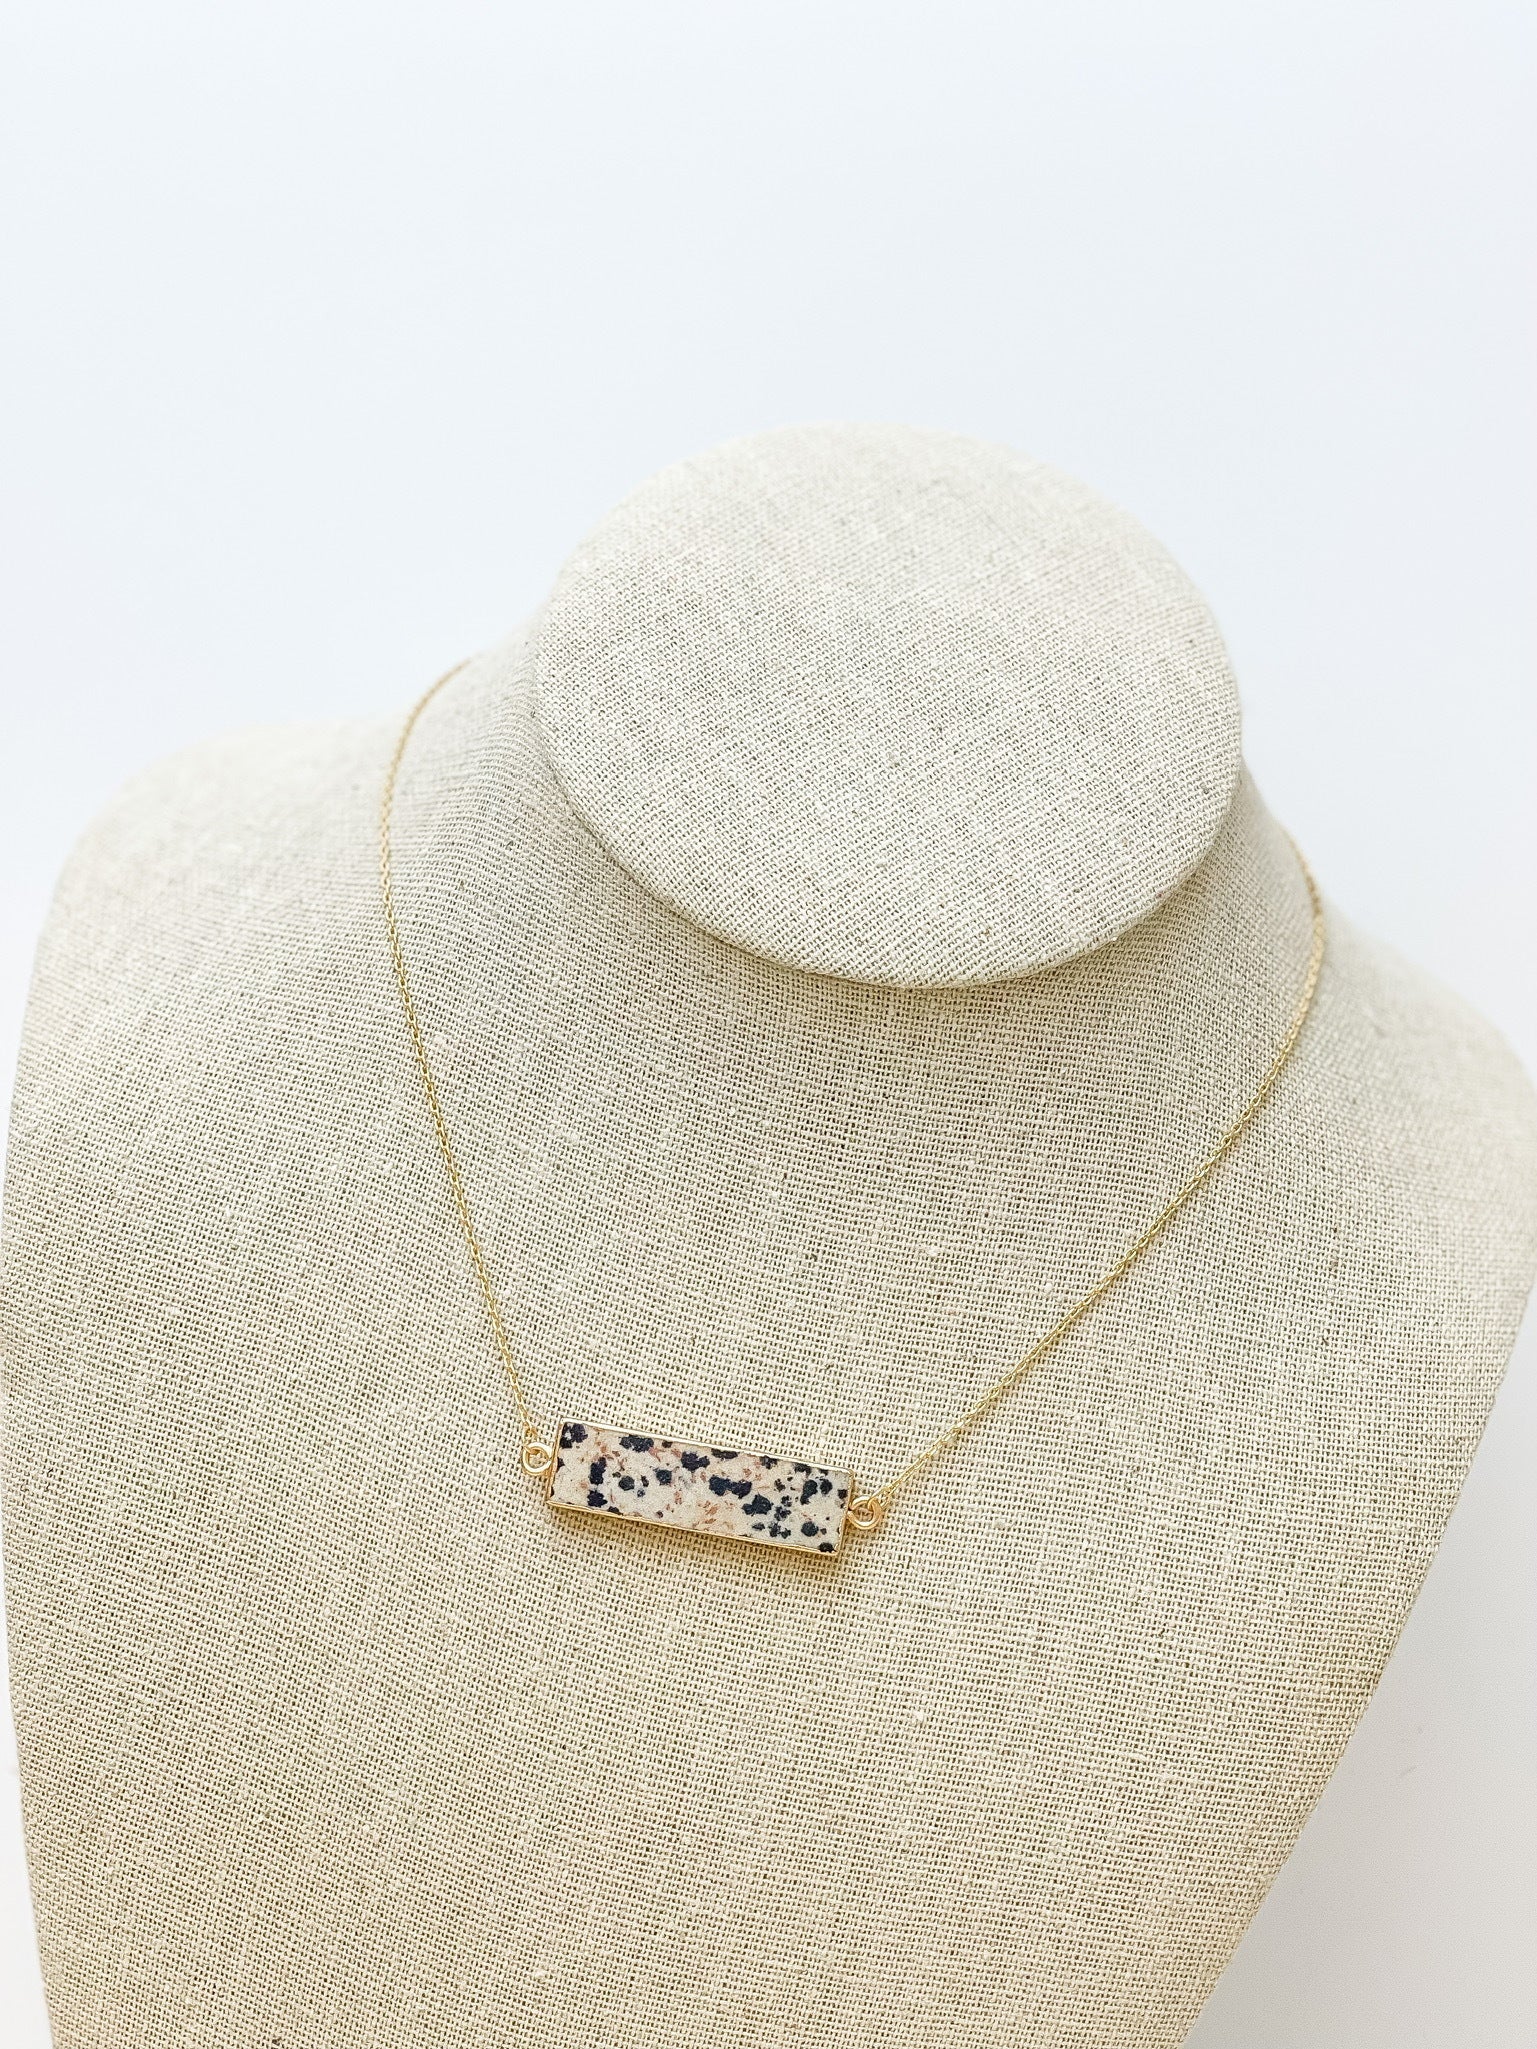 Semi Precious Bar Pendant Necklace - Spotted